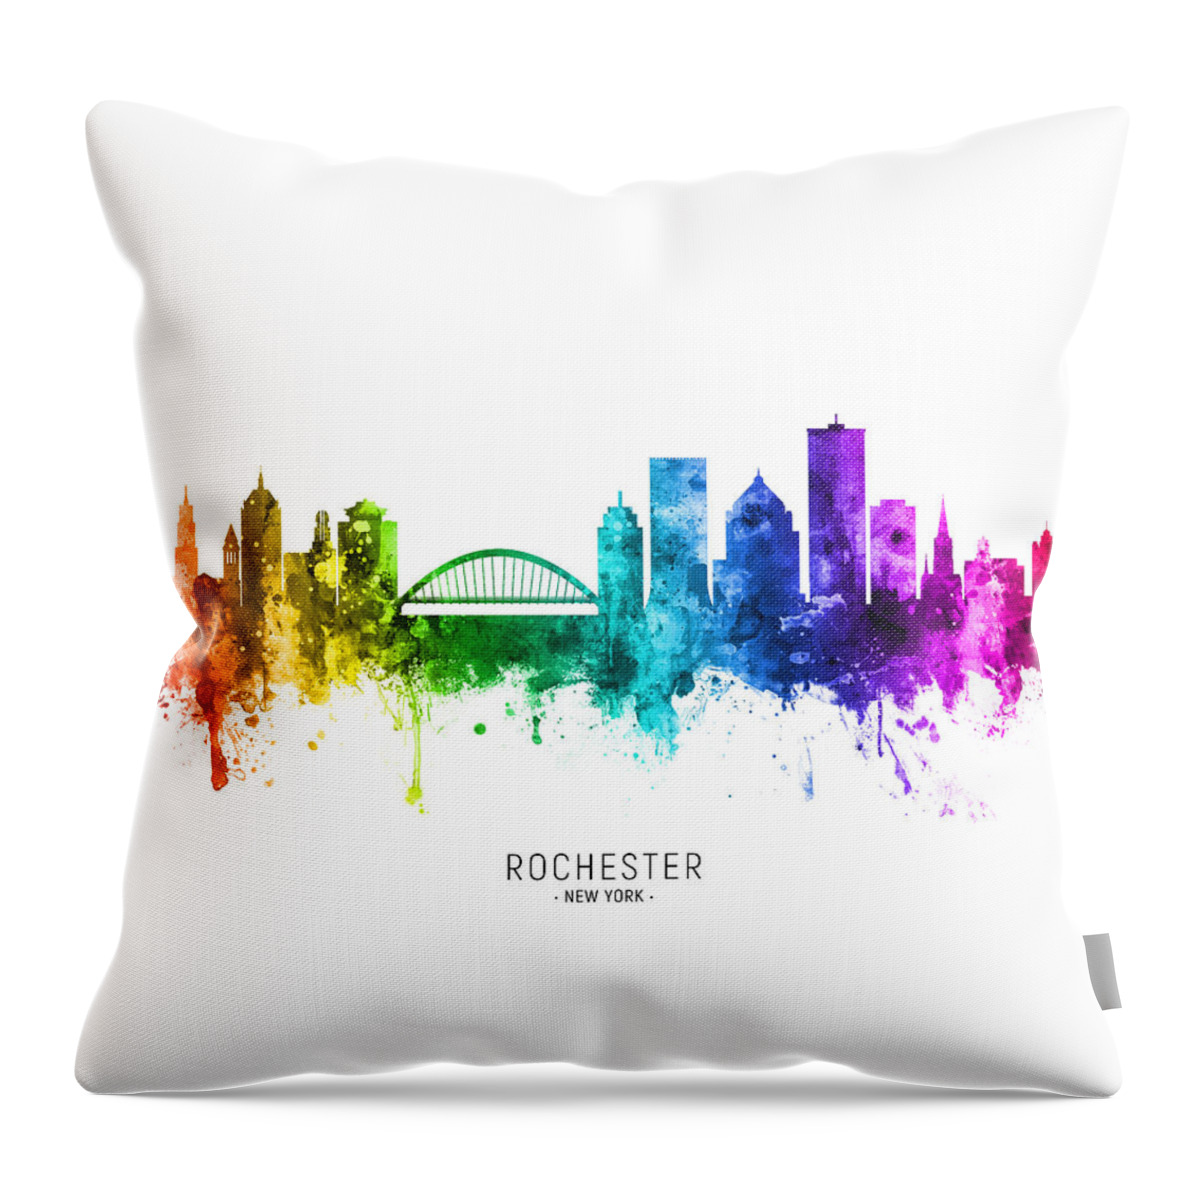 Rochester Throw Pillow featuring the digital art Rochester New York Skyline #91 by Michael Tompsett